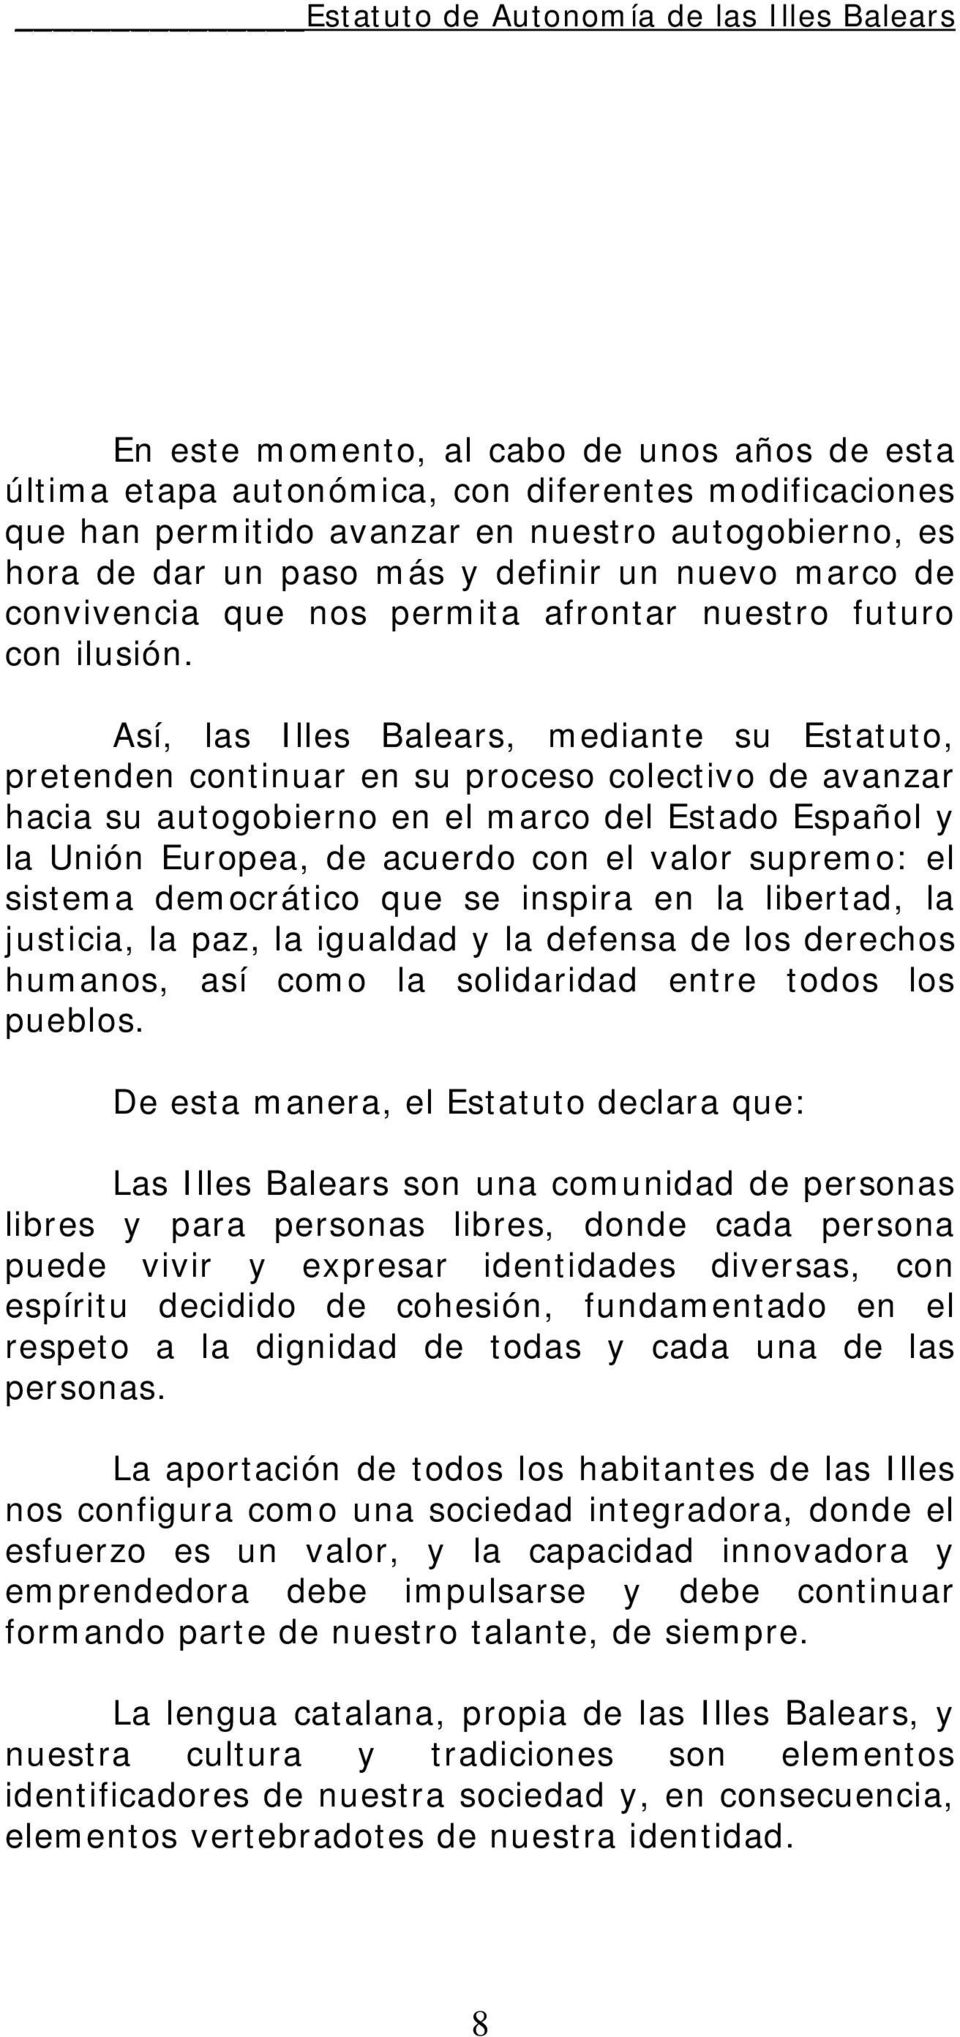 Así, las Illes Balears, mediante su Estatuto, pretenden continuar en su proceso colectivo de avanzar hacia su autogobierno en el marco del Estado Español y la Unión Europea, de acuerdo con el valor